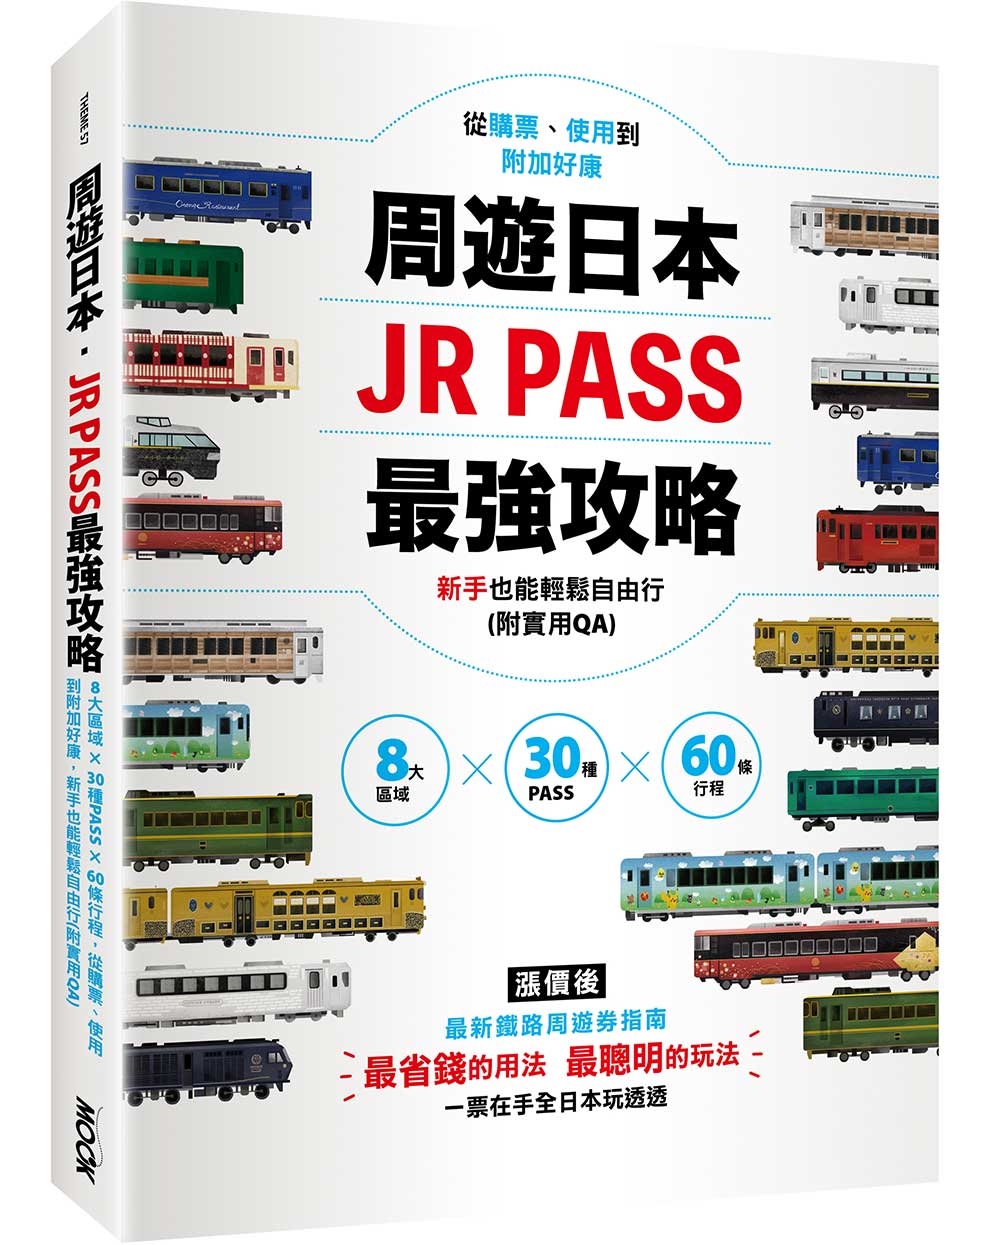 周遊日本．JR PASS最強攻略：8大區域×30種PASS×60條行程，從購票、使用到附加好康，新手也能輕鬆自由行(附實用QA)